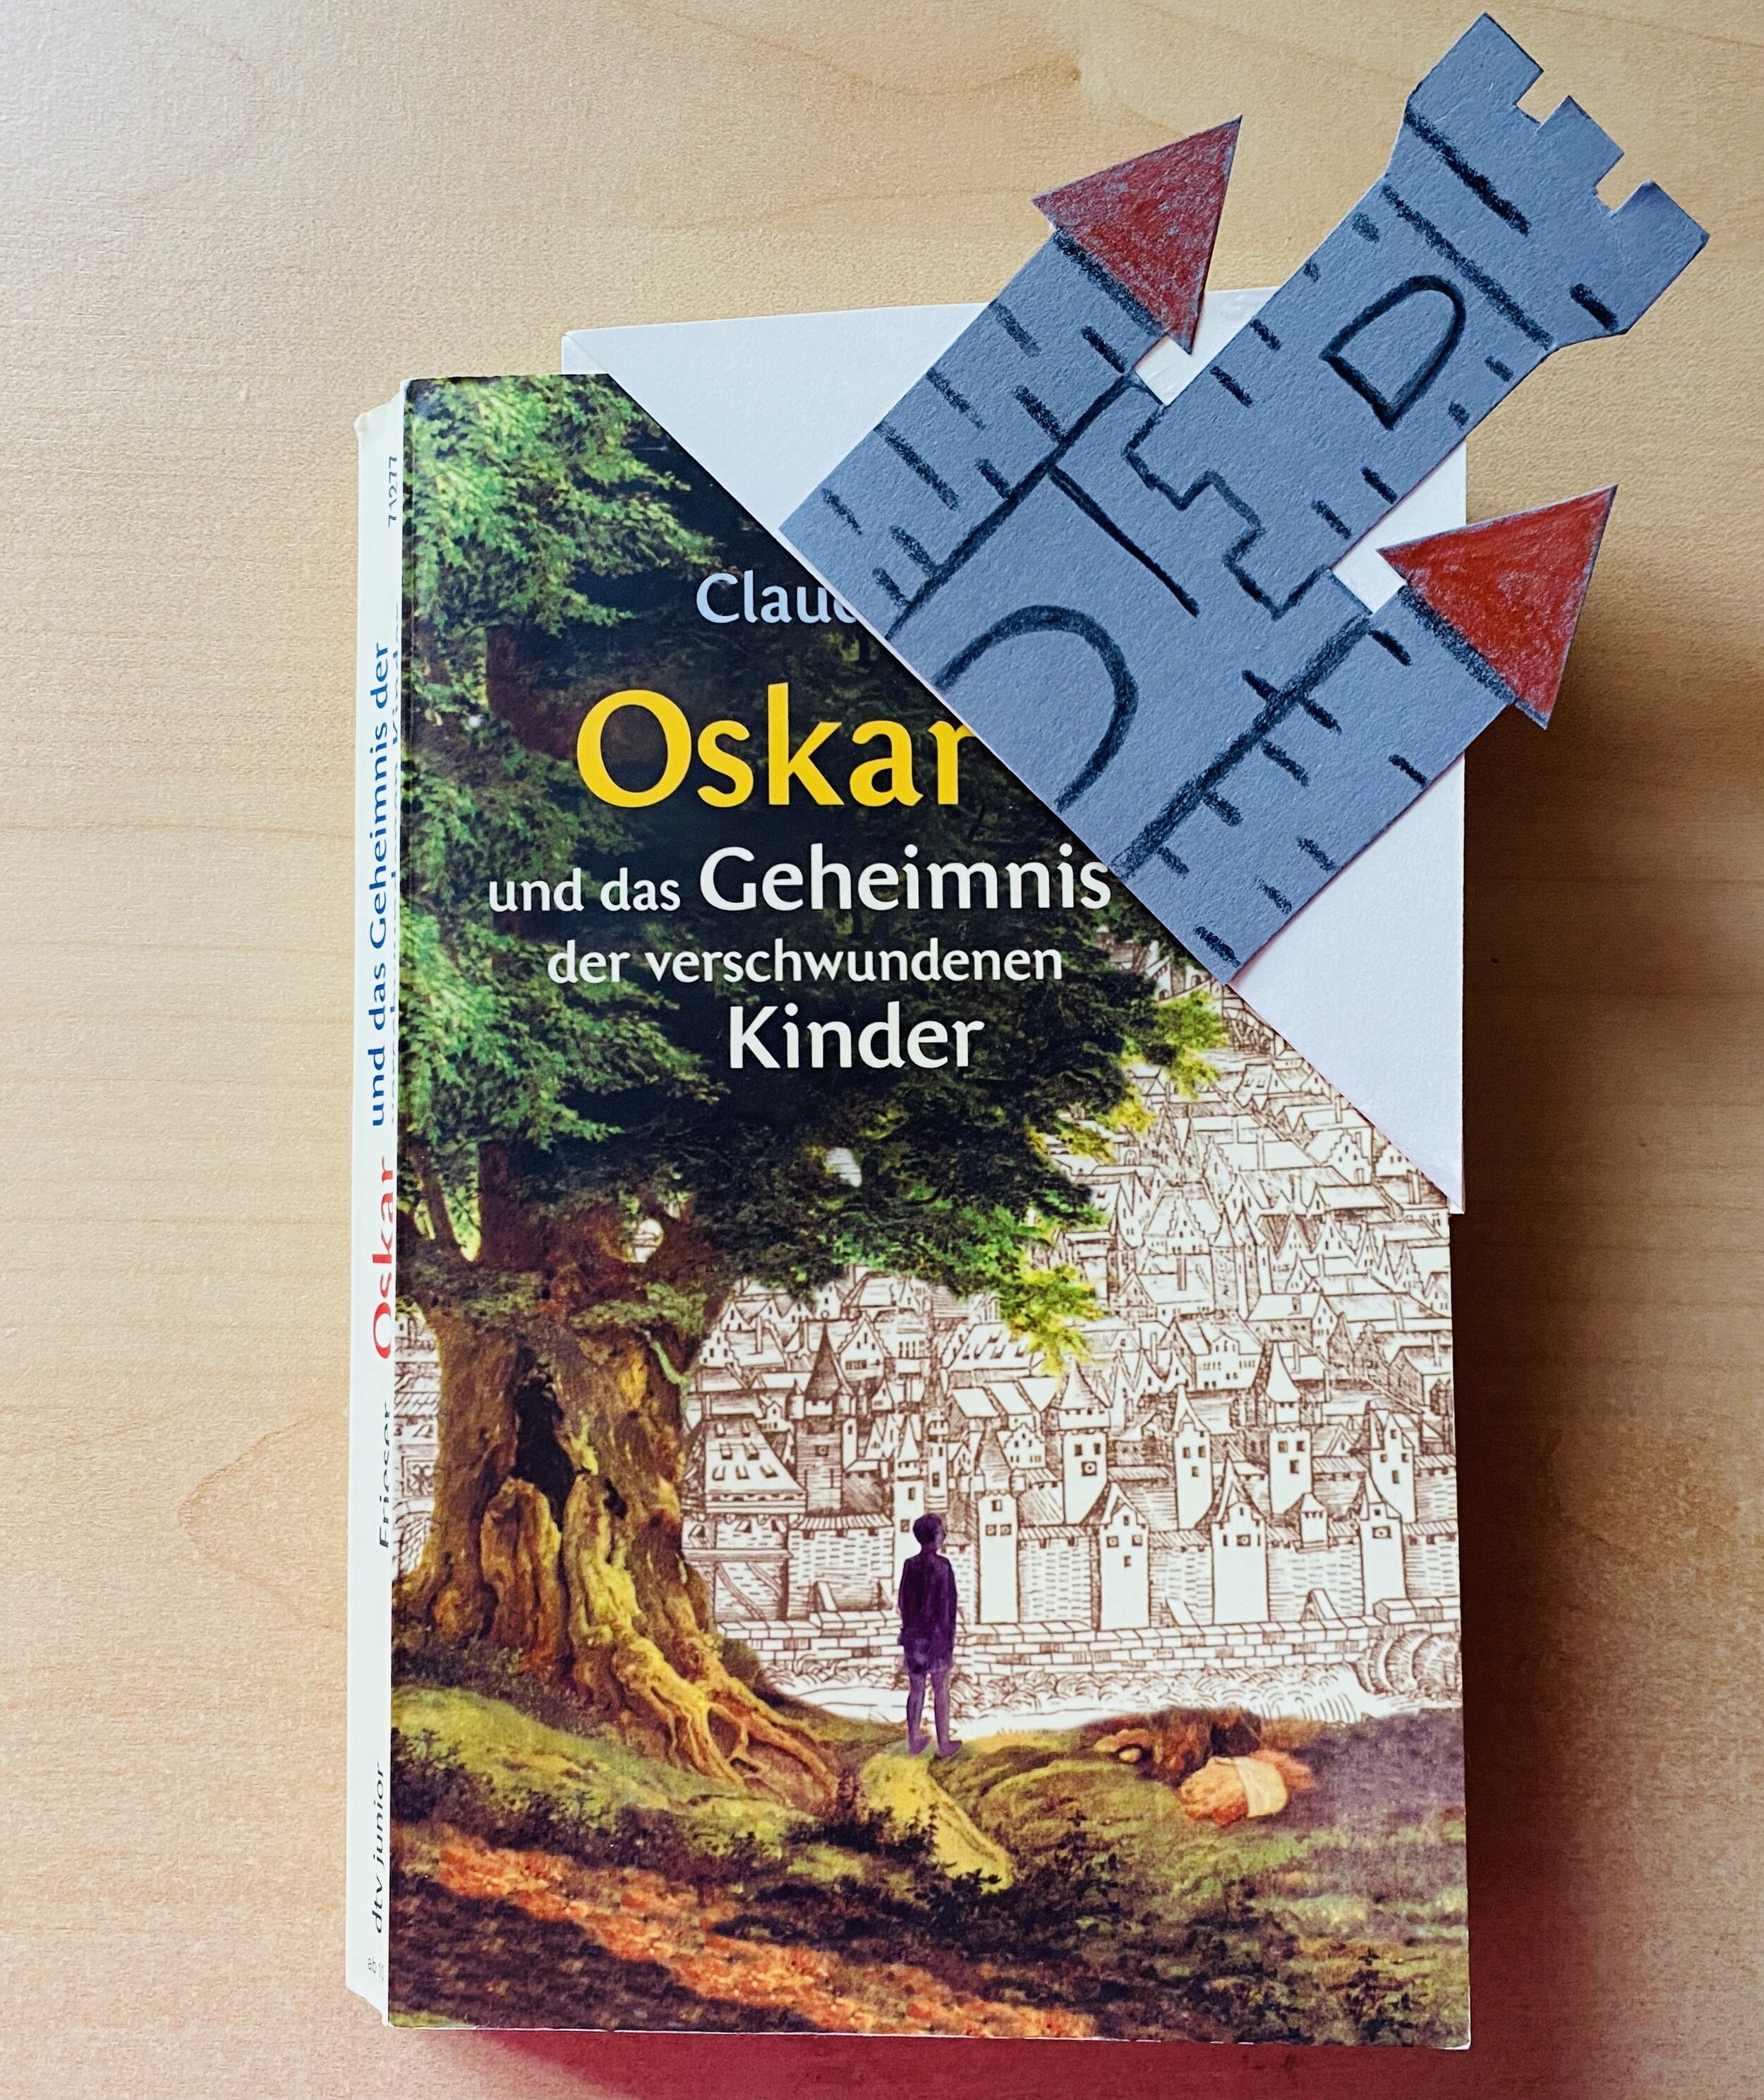  Das Buch Oskar und das Geheimnis der verschwundenen Kinder 